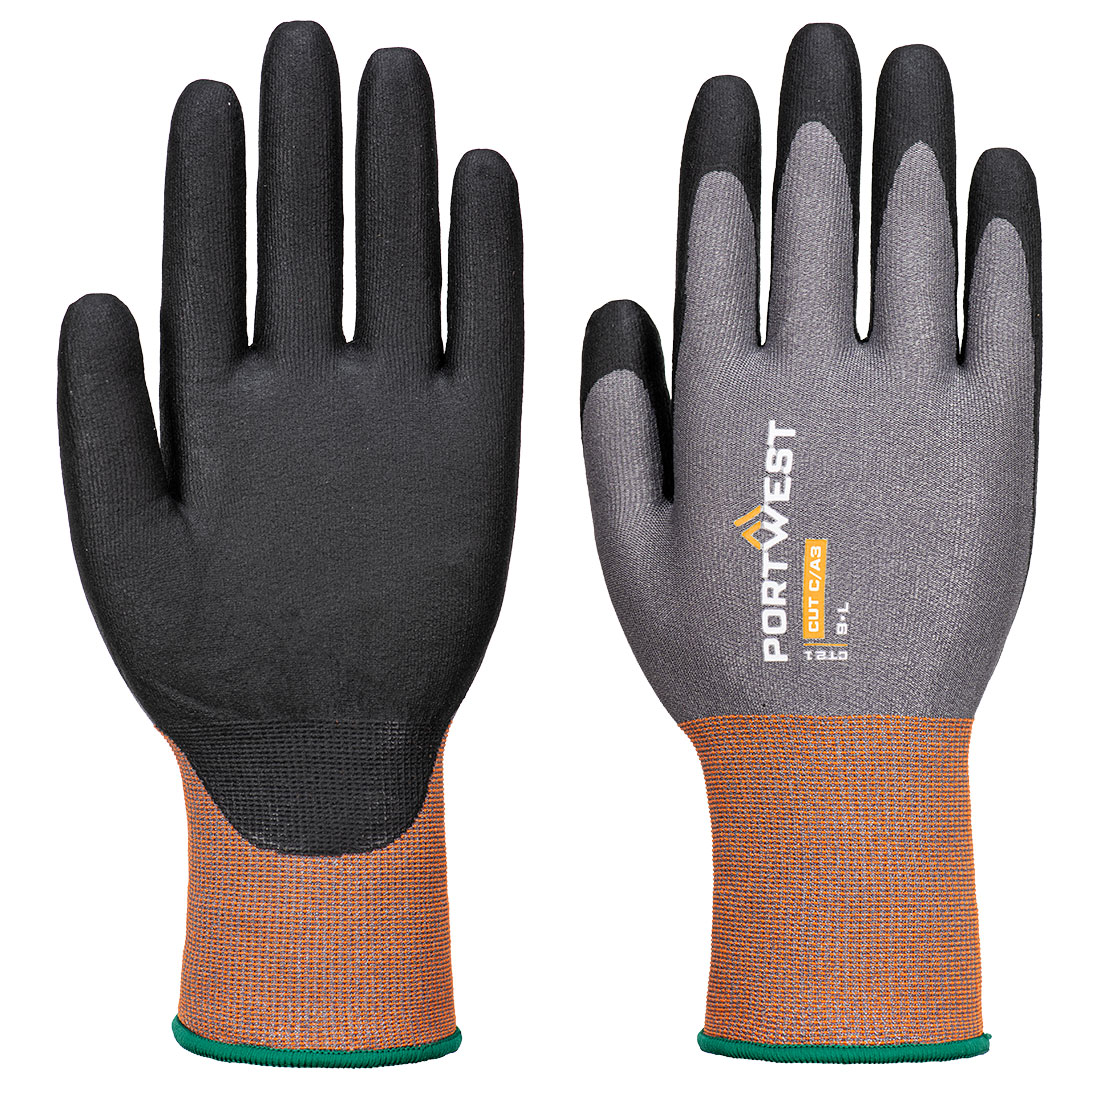 CT Cut C21 Nitrile Glove